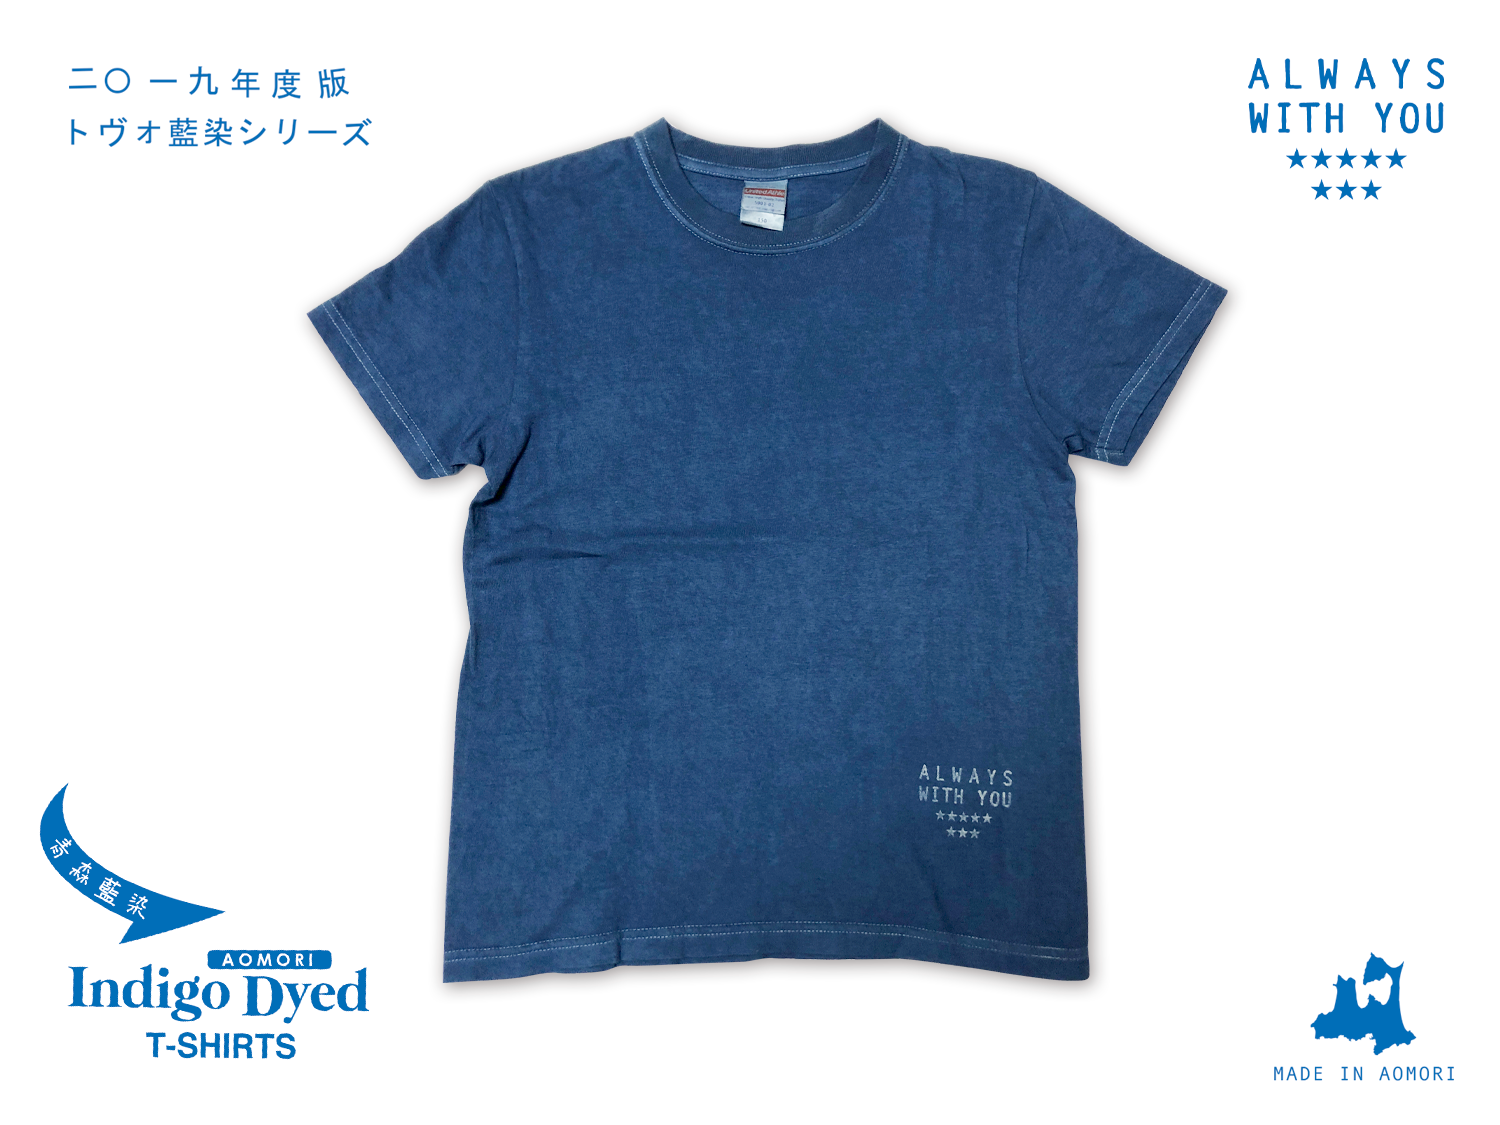 【新商品】tovo藍染Tシャツとてぬぐい(2019年版)